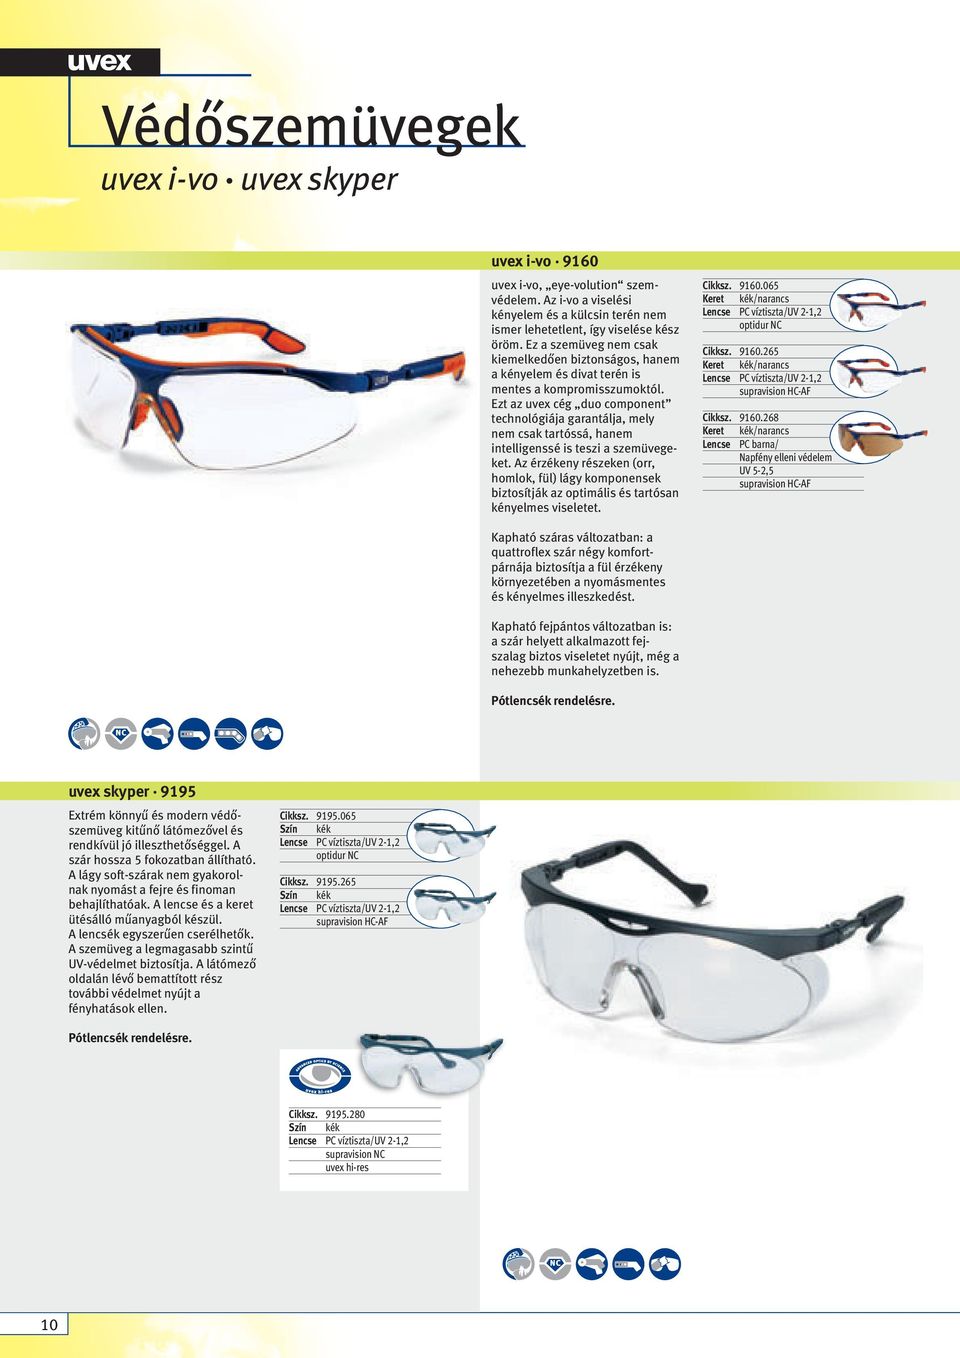 Ezt az uvex cég duo component technológiája garantálja, mely nem csak tartóssá, hanem intelligenssé is teszi a szemüvegeket.